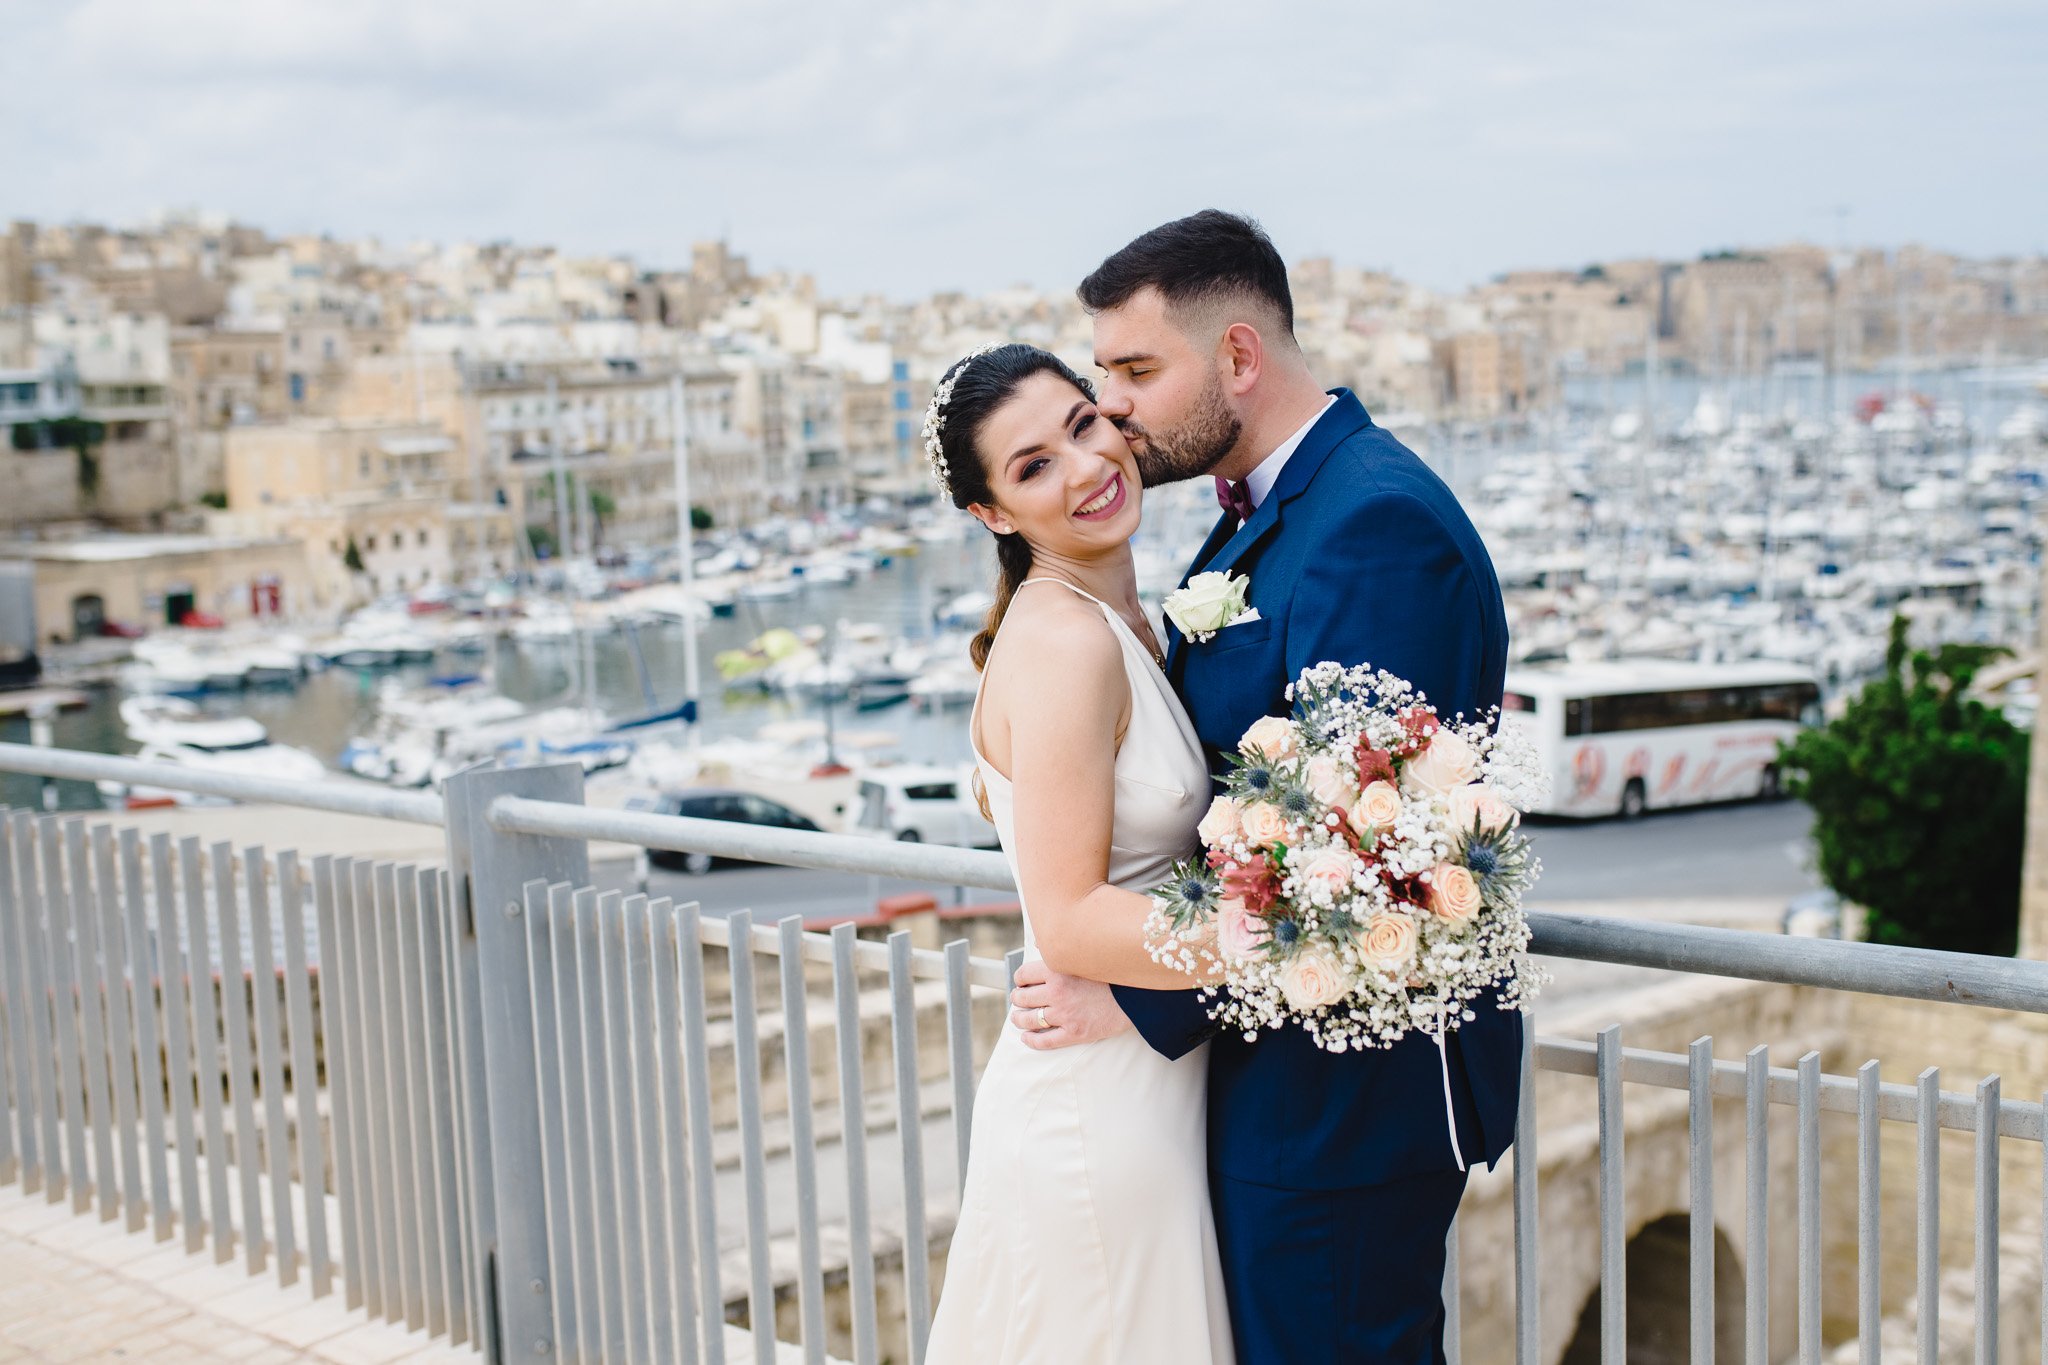 Birgu is a popular location for a wedding photo shoot